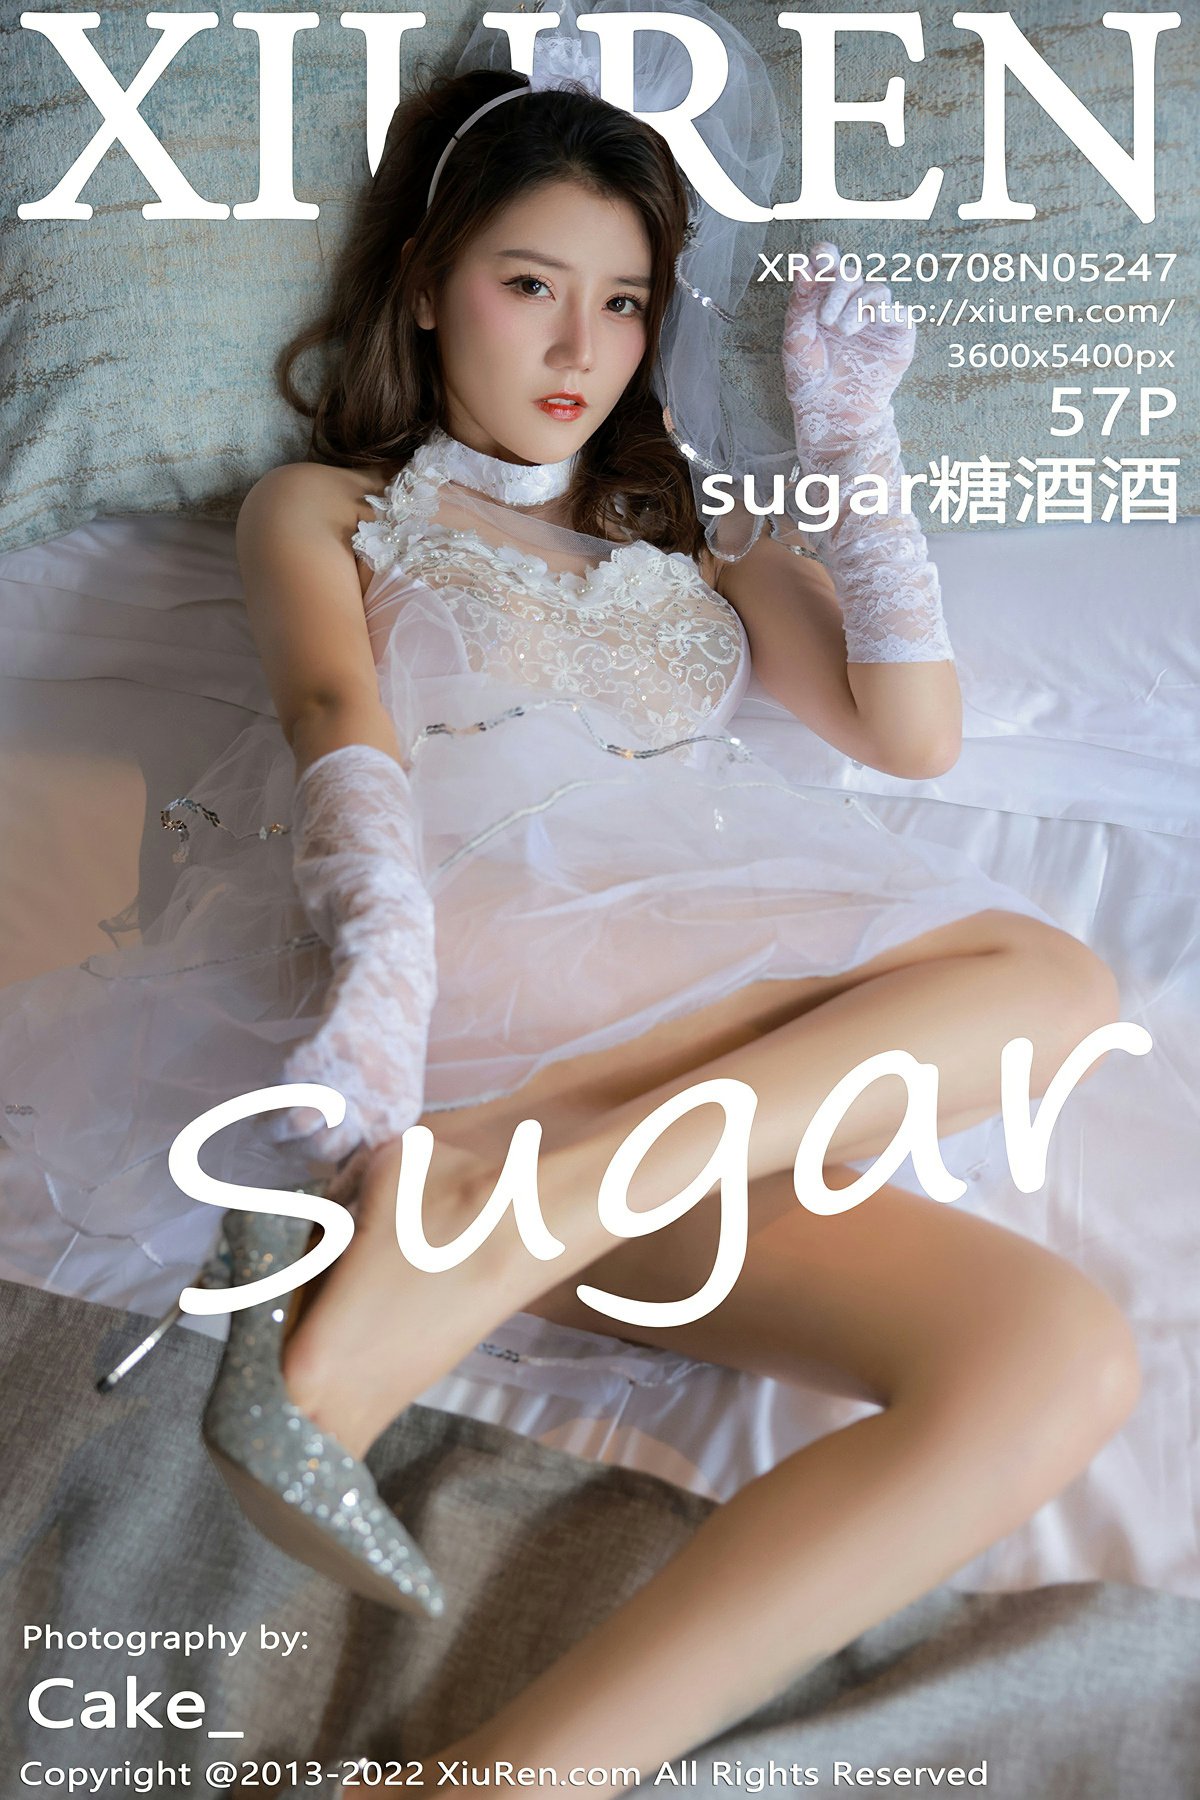 [XiuRen秀人网] 2022.07.08 No.5247 sugar糖酒酒 [57+1P]-第1张图片-宅男套图吧